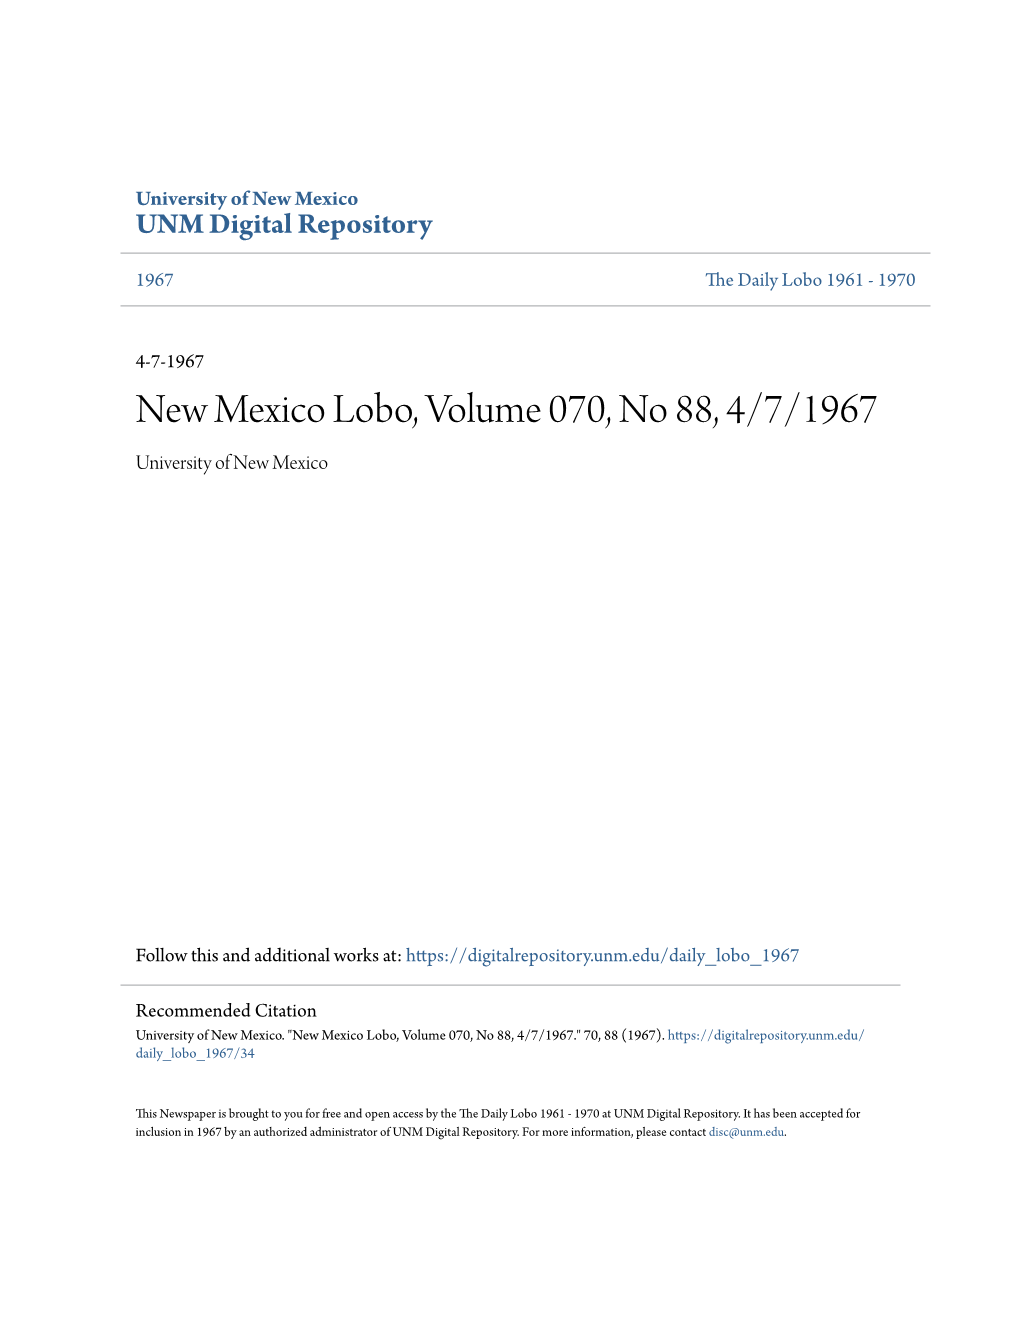 New Mexico Lobo, Volume 070, No 88, 4/7/1967 University of New Mexico